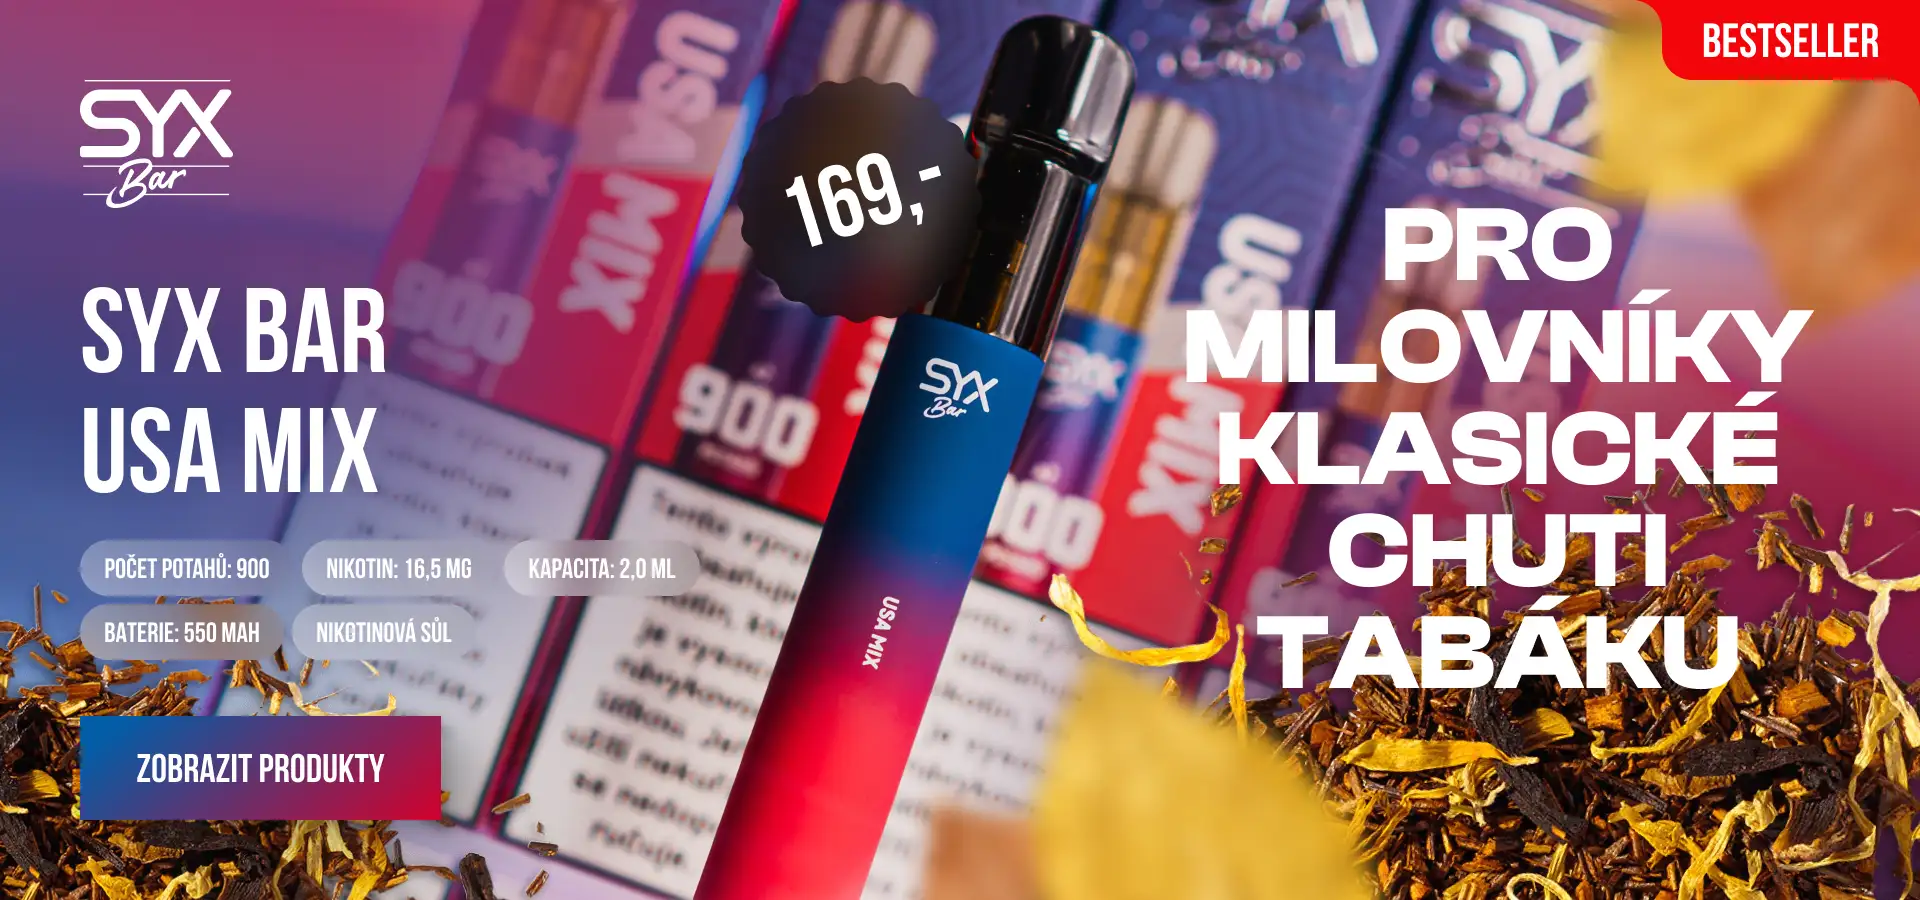 SYX BAR USA MIX: Pro milovníky klasické chuti tabáku